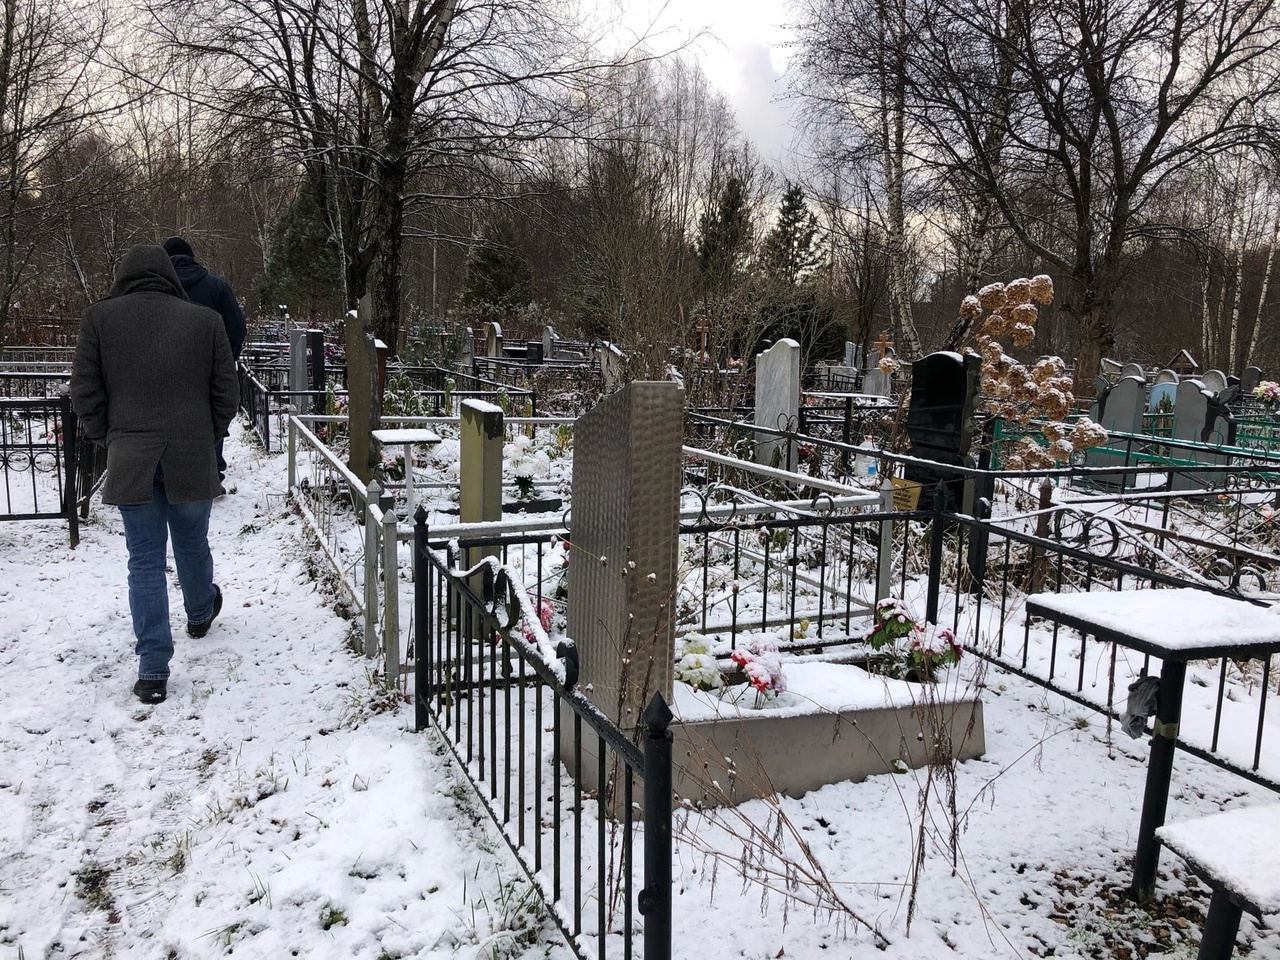 С 1 февраля в Ярославле увеличат стоимость услуг по погребению